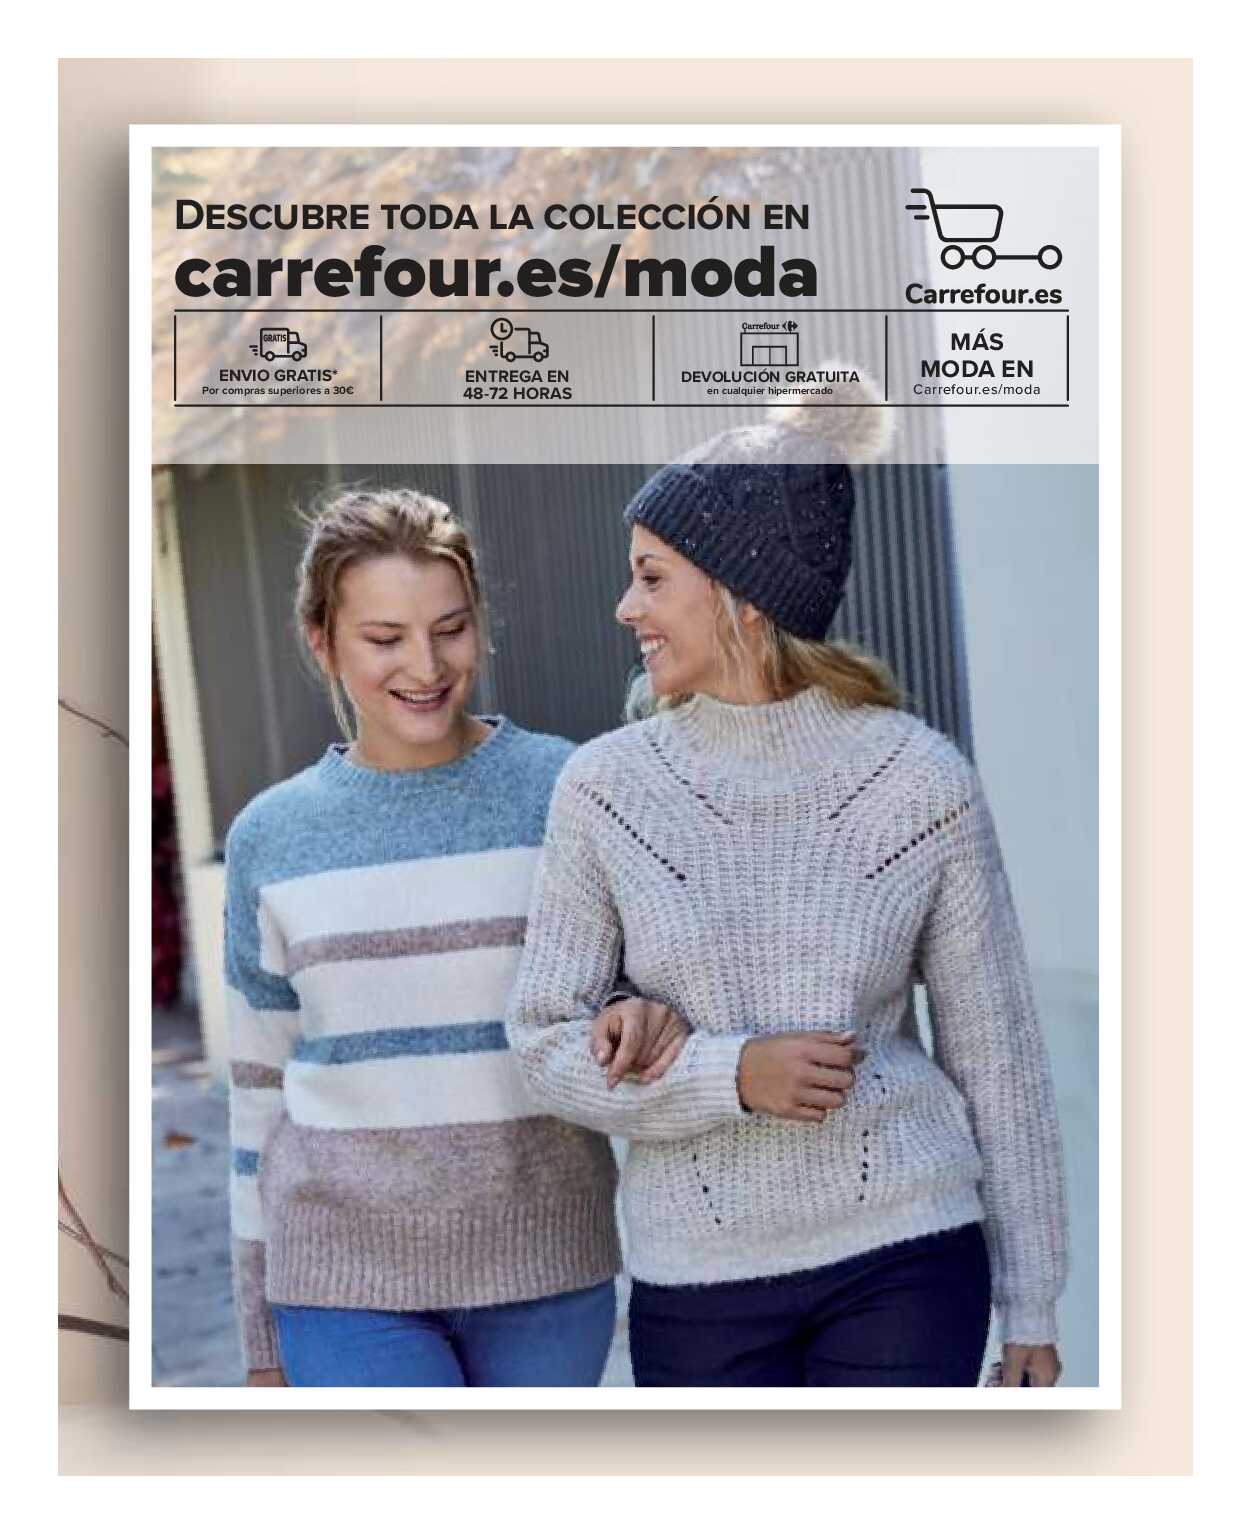 Textil mujer, hombre y niños Carrefour. Página 22